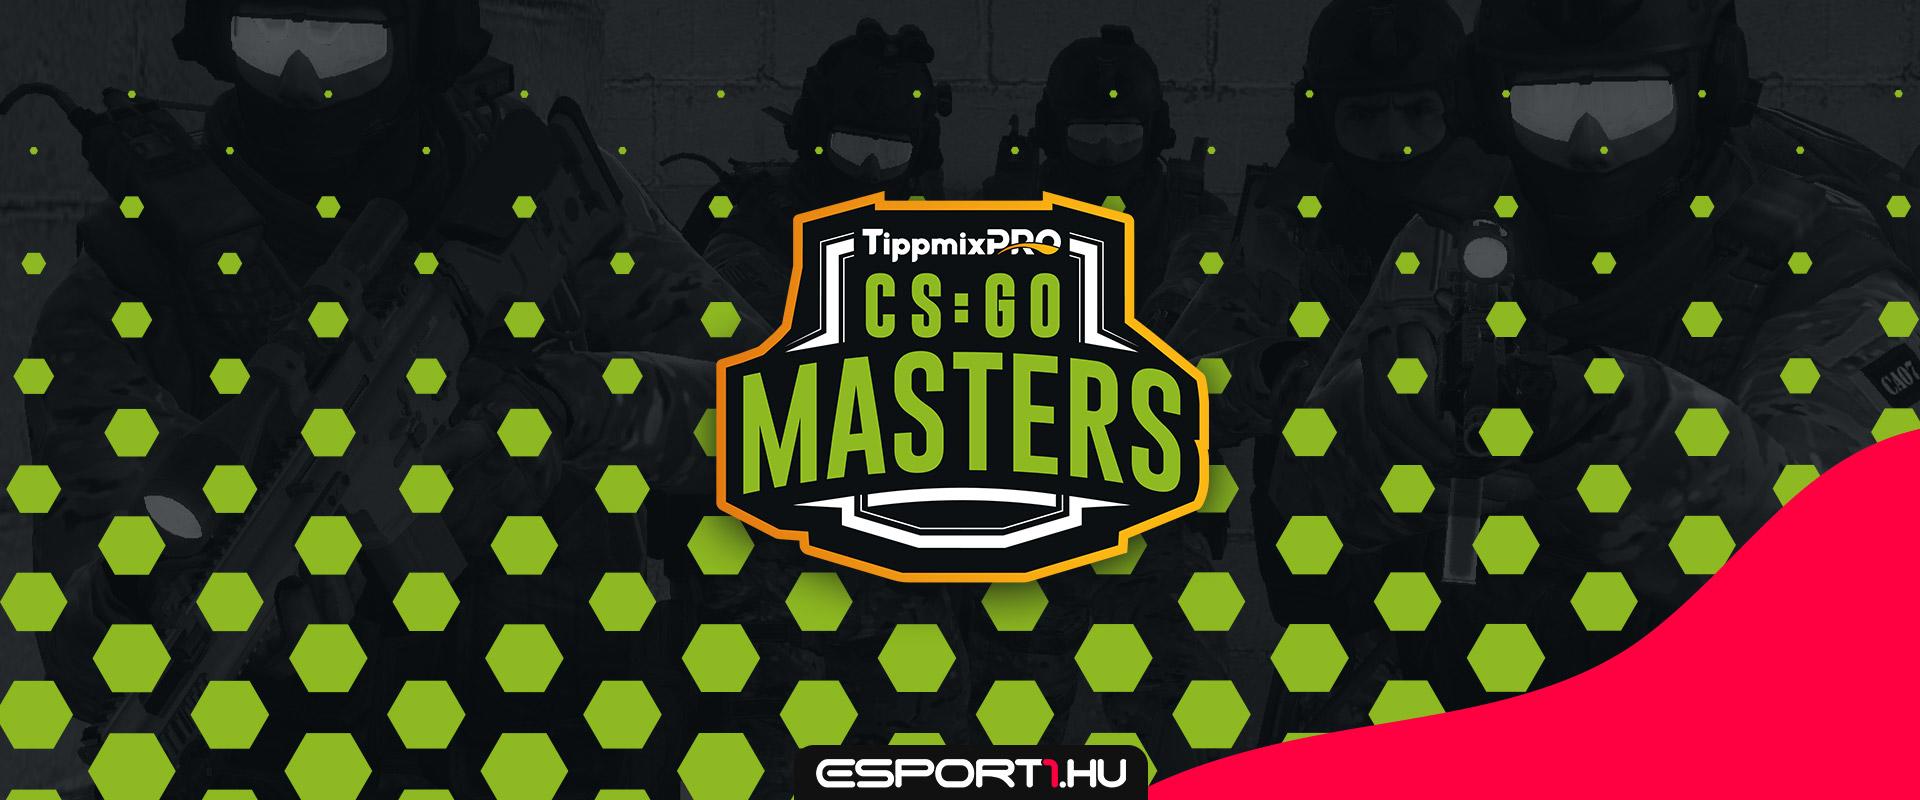 TippmixPro CS:GO Masters: Itt az első fogadható magyar ligarendszerű e-sport esemény